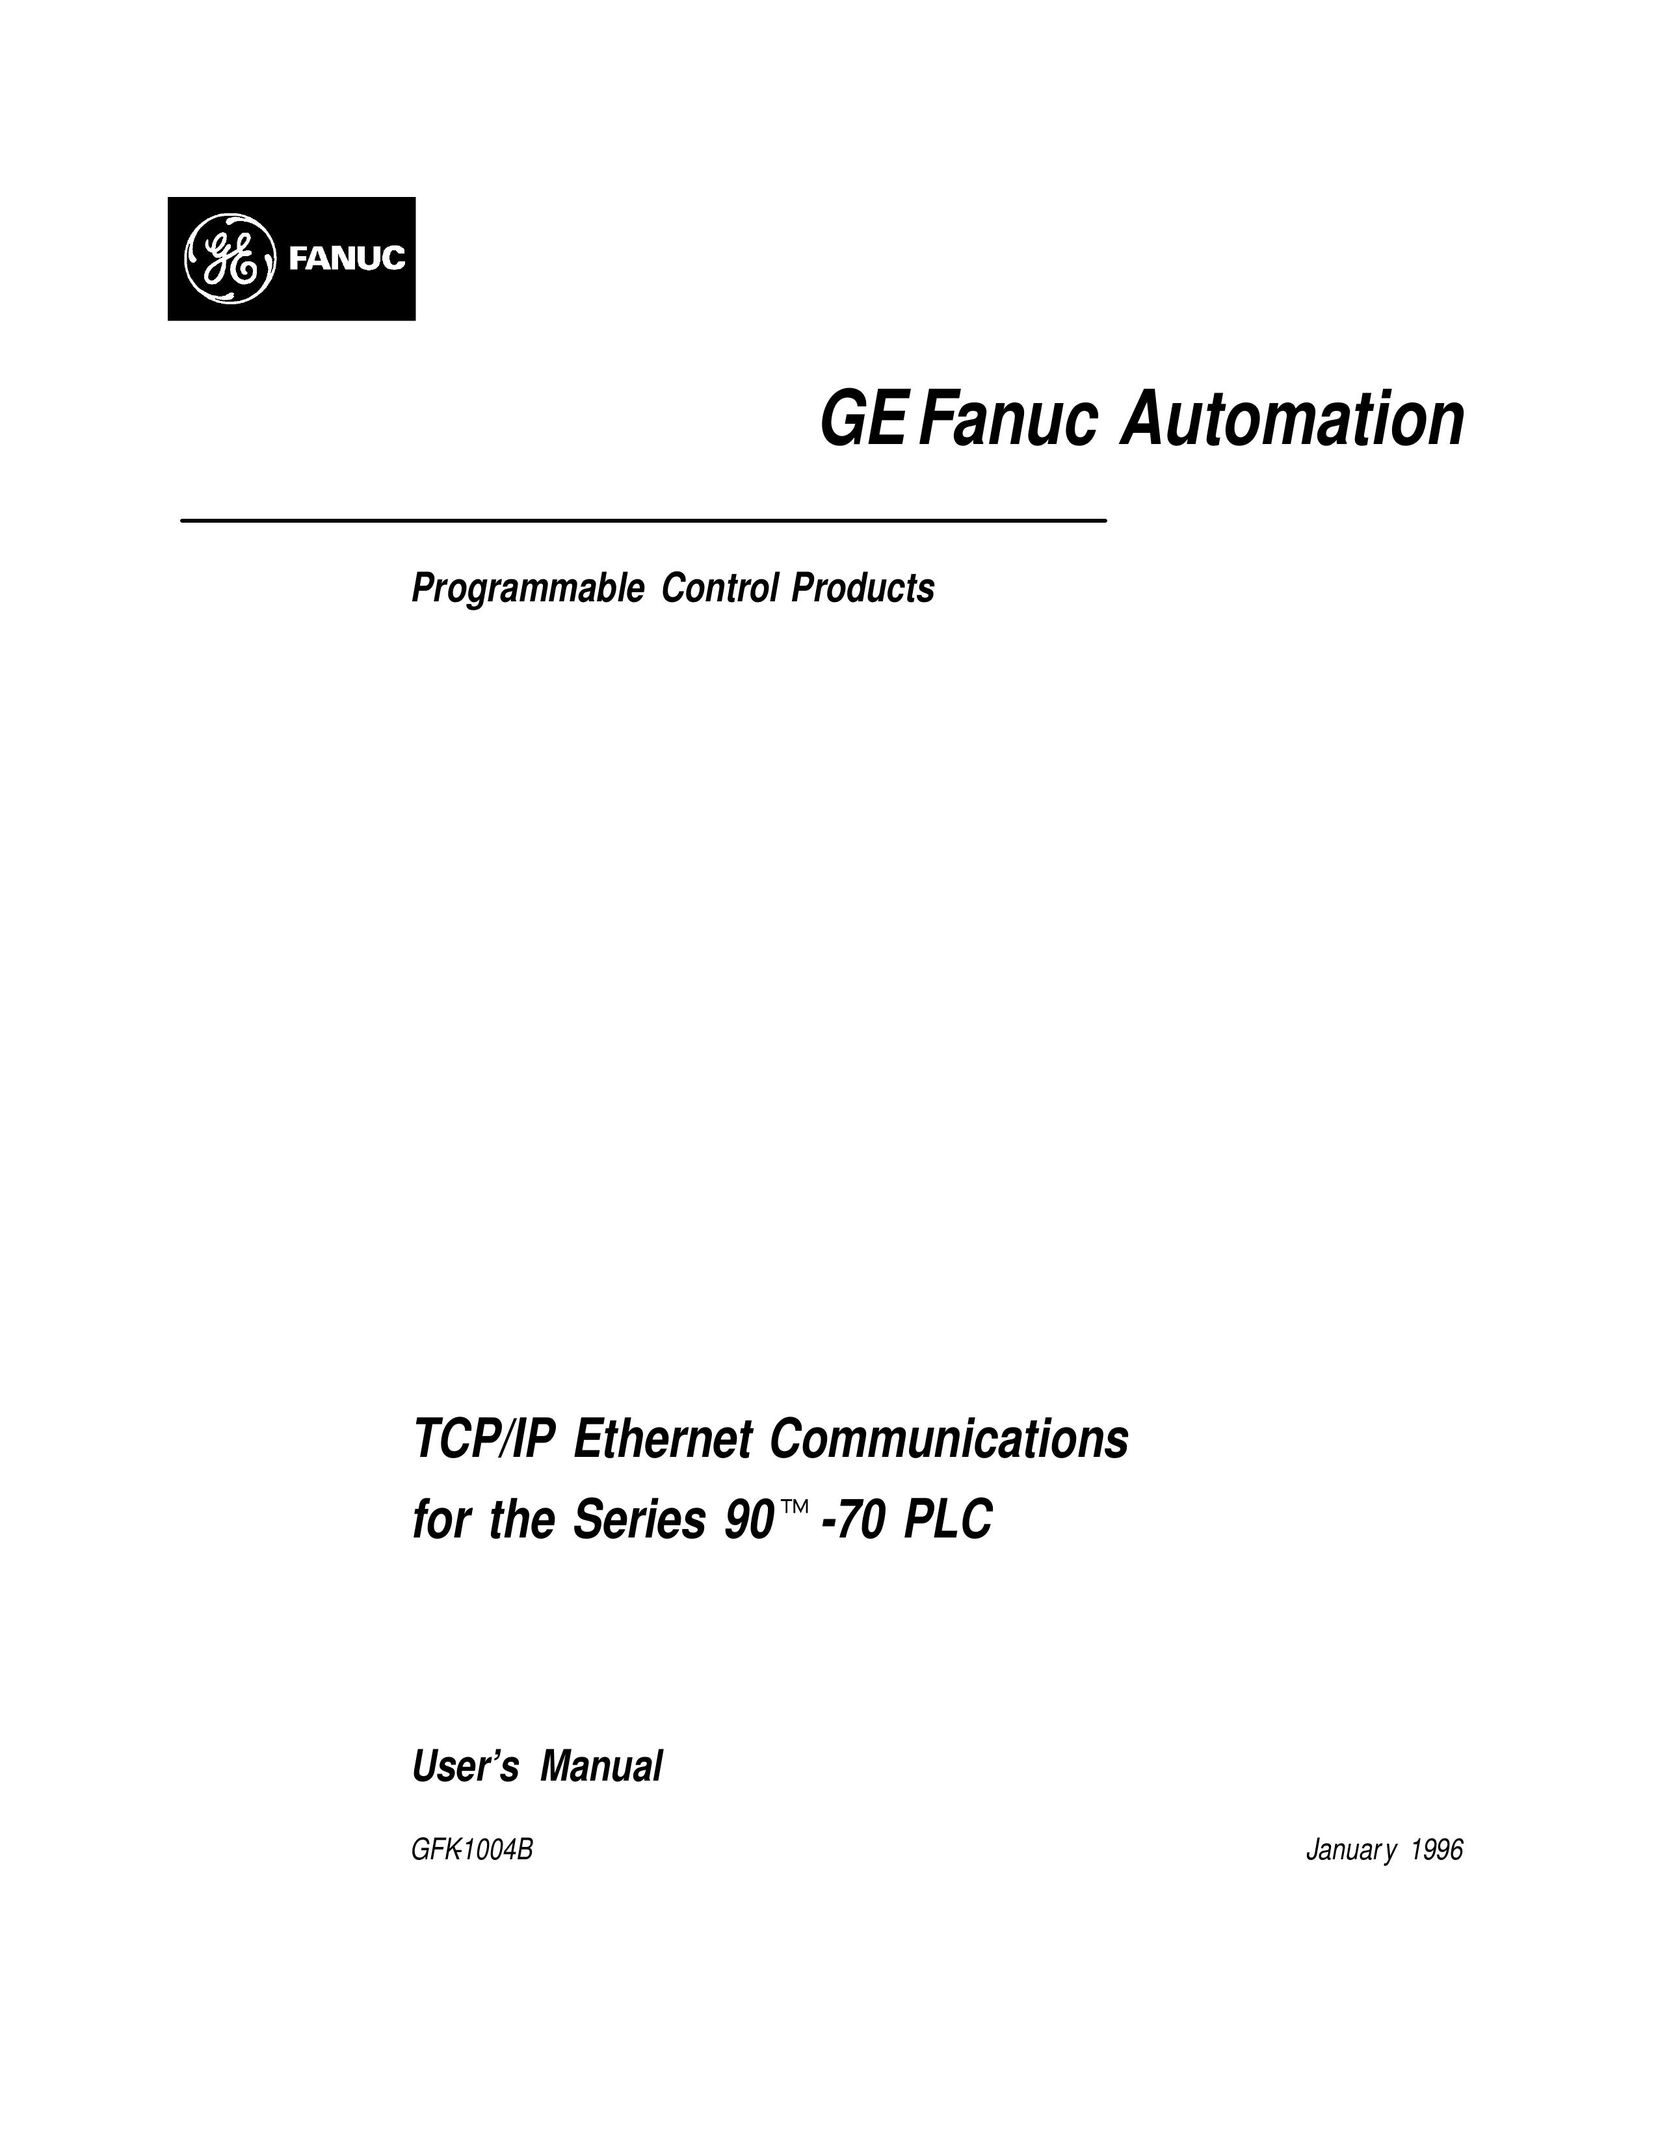 GE GFK-1004B Network Router User Manual